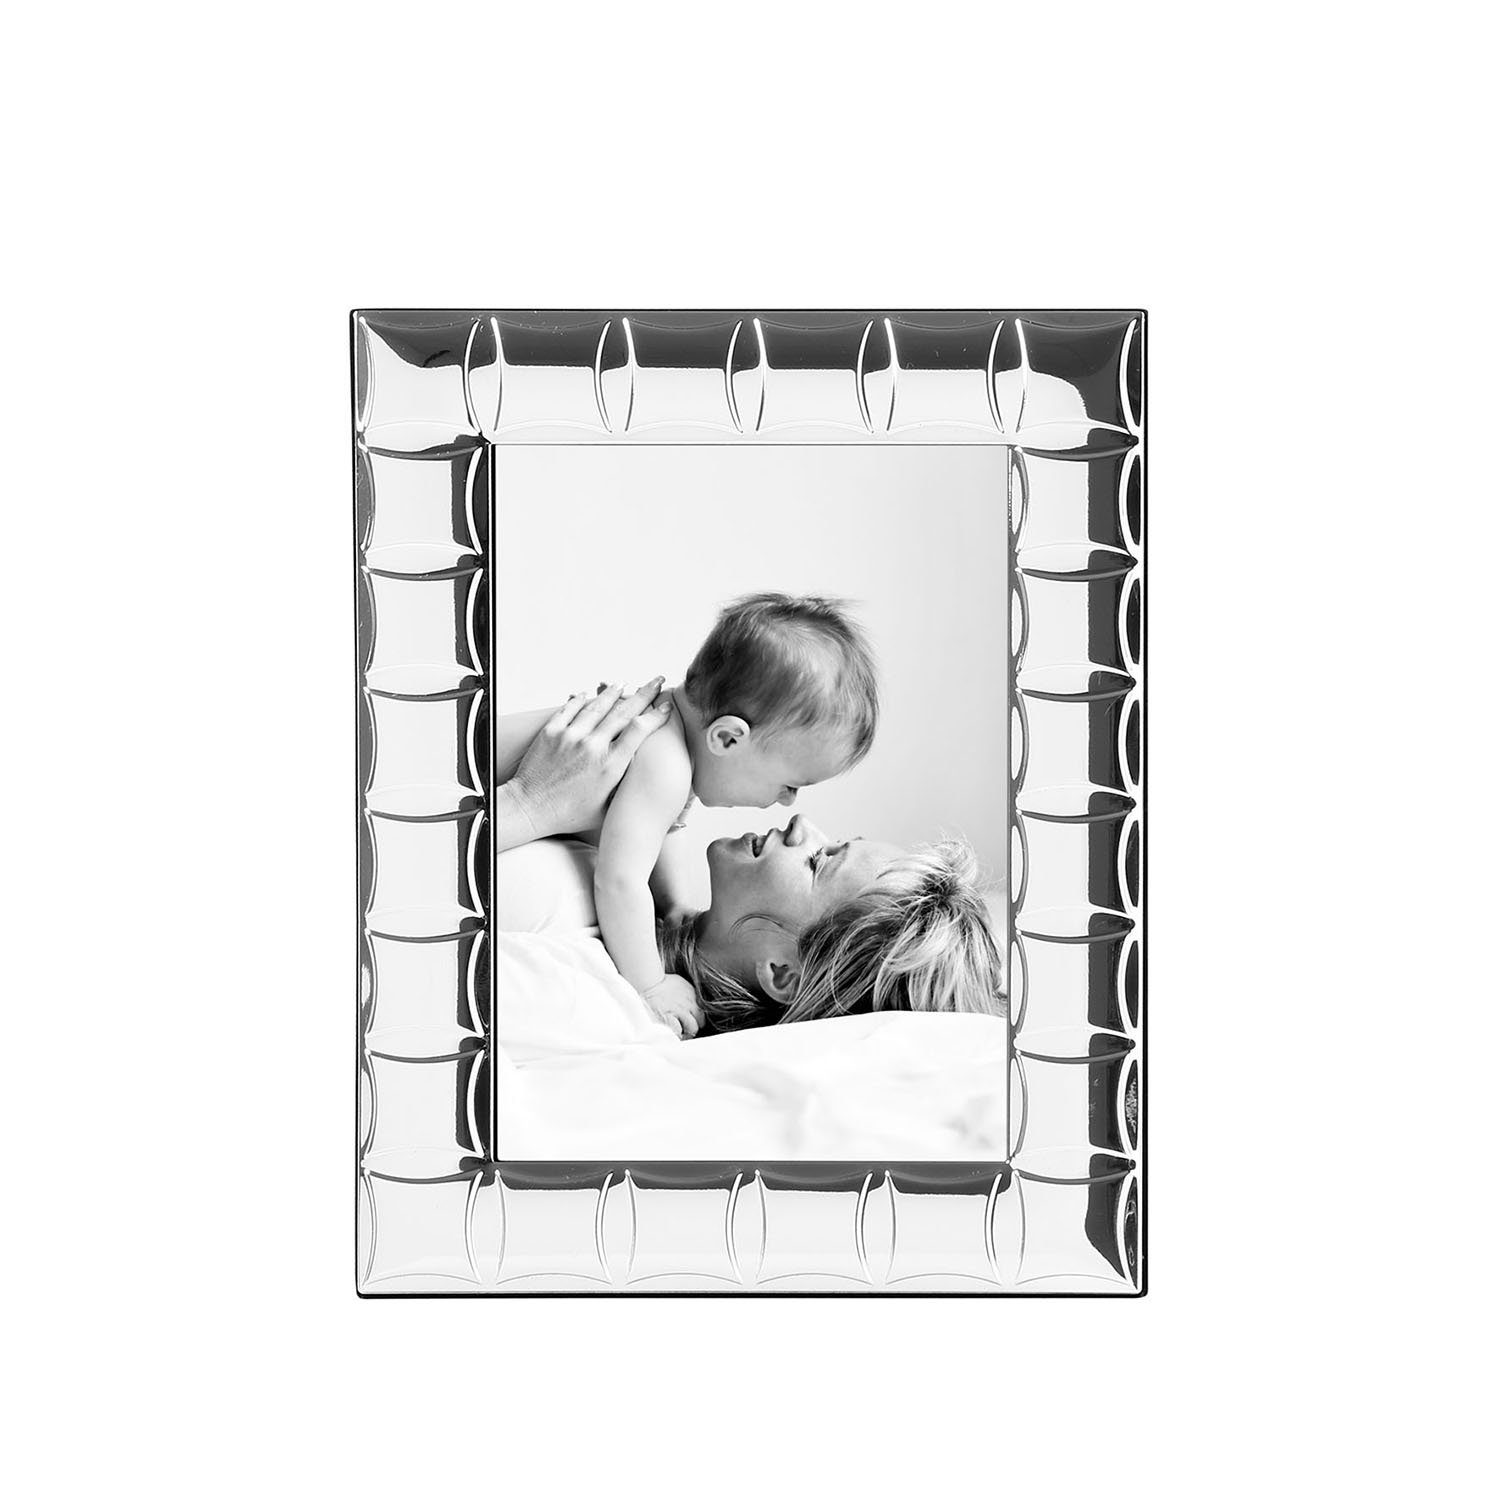 Fink Bilderrahmen Bilderrahmen Dana - Glas / Metall - versilbert - B.16cm x T.21cm, für 1 Bilder, vertikal, horizontal hängbar & stehend verwendbar - 1 Klemmbilderhaken | Einzelrahmen